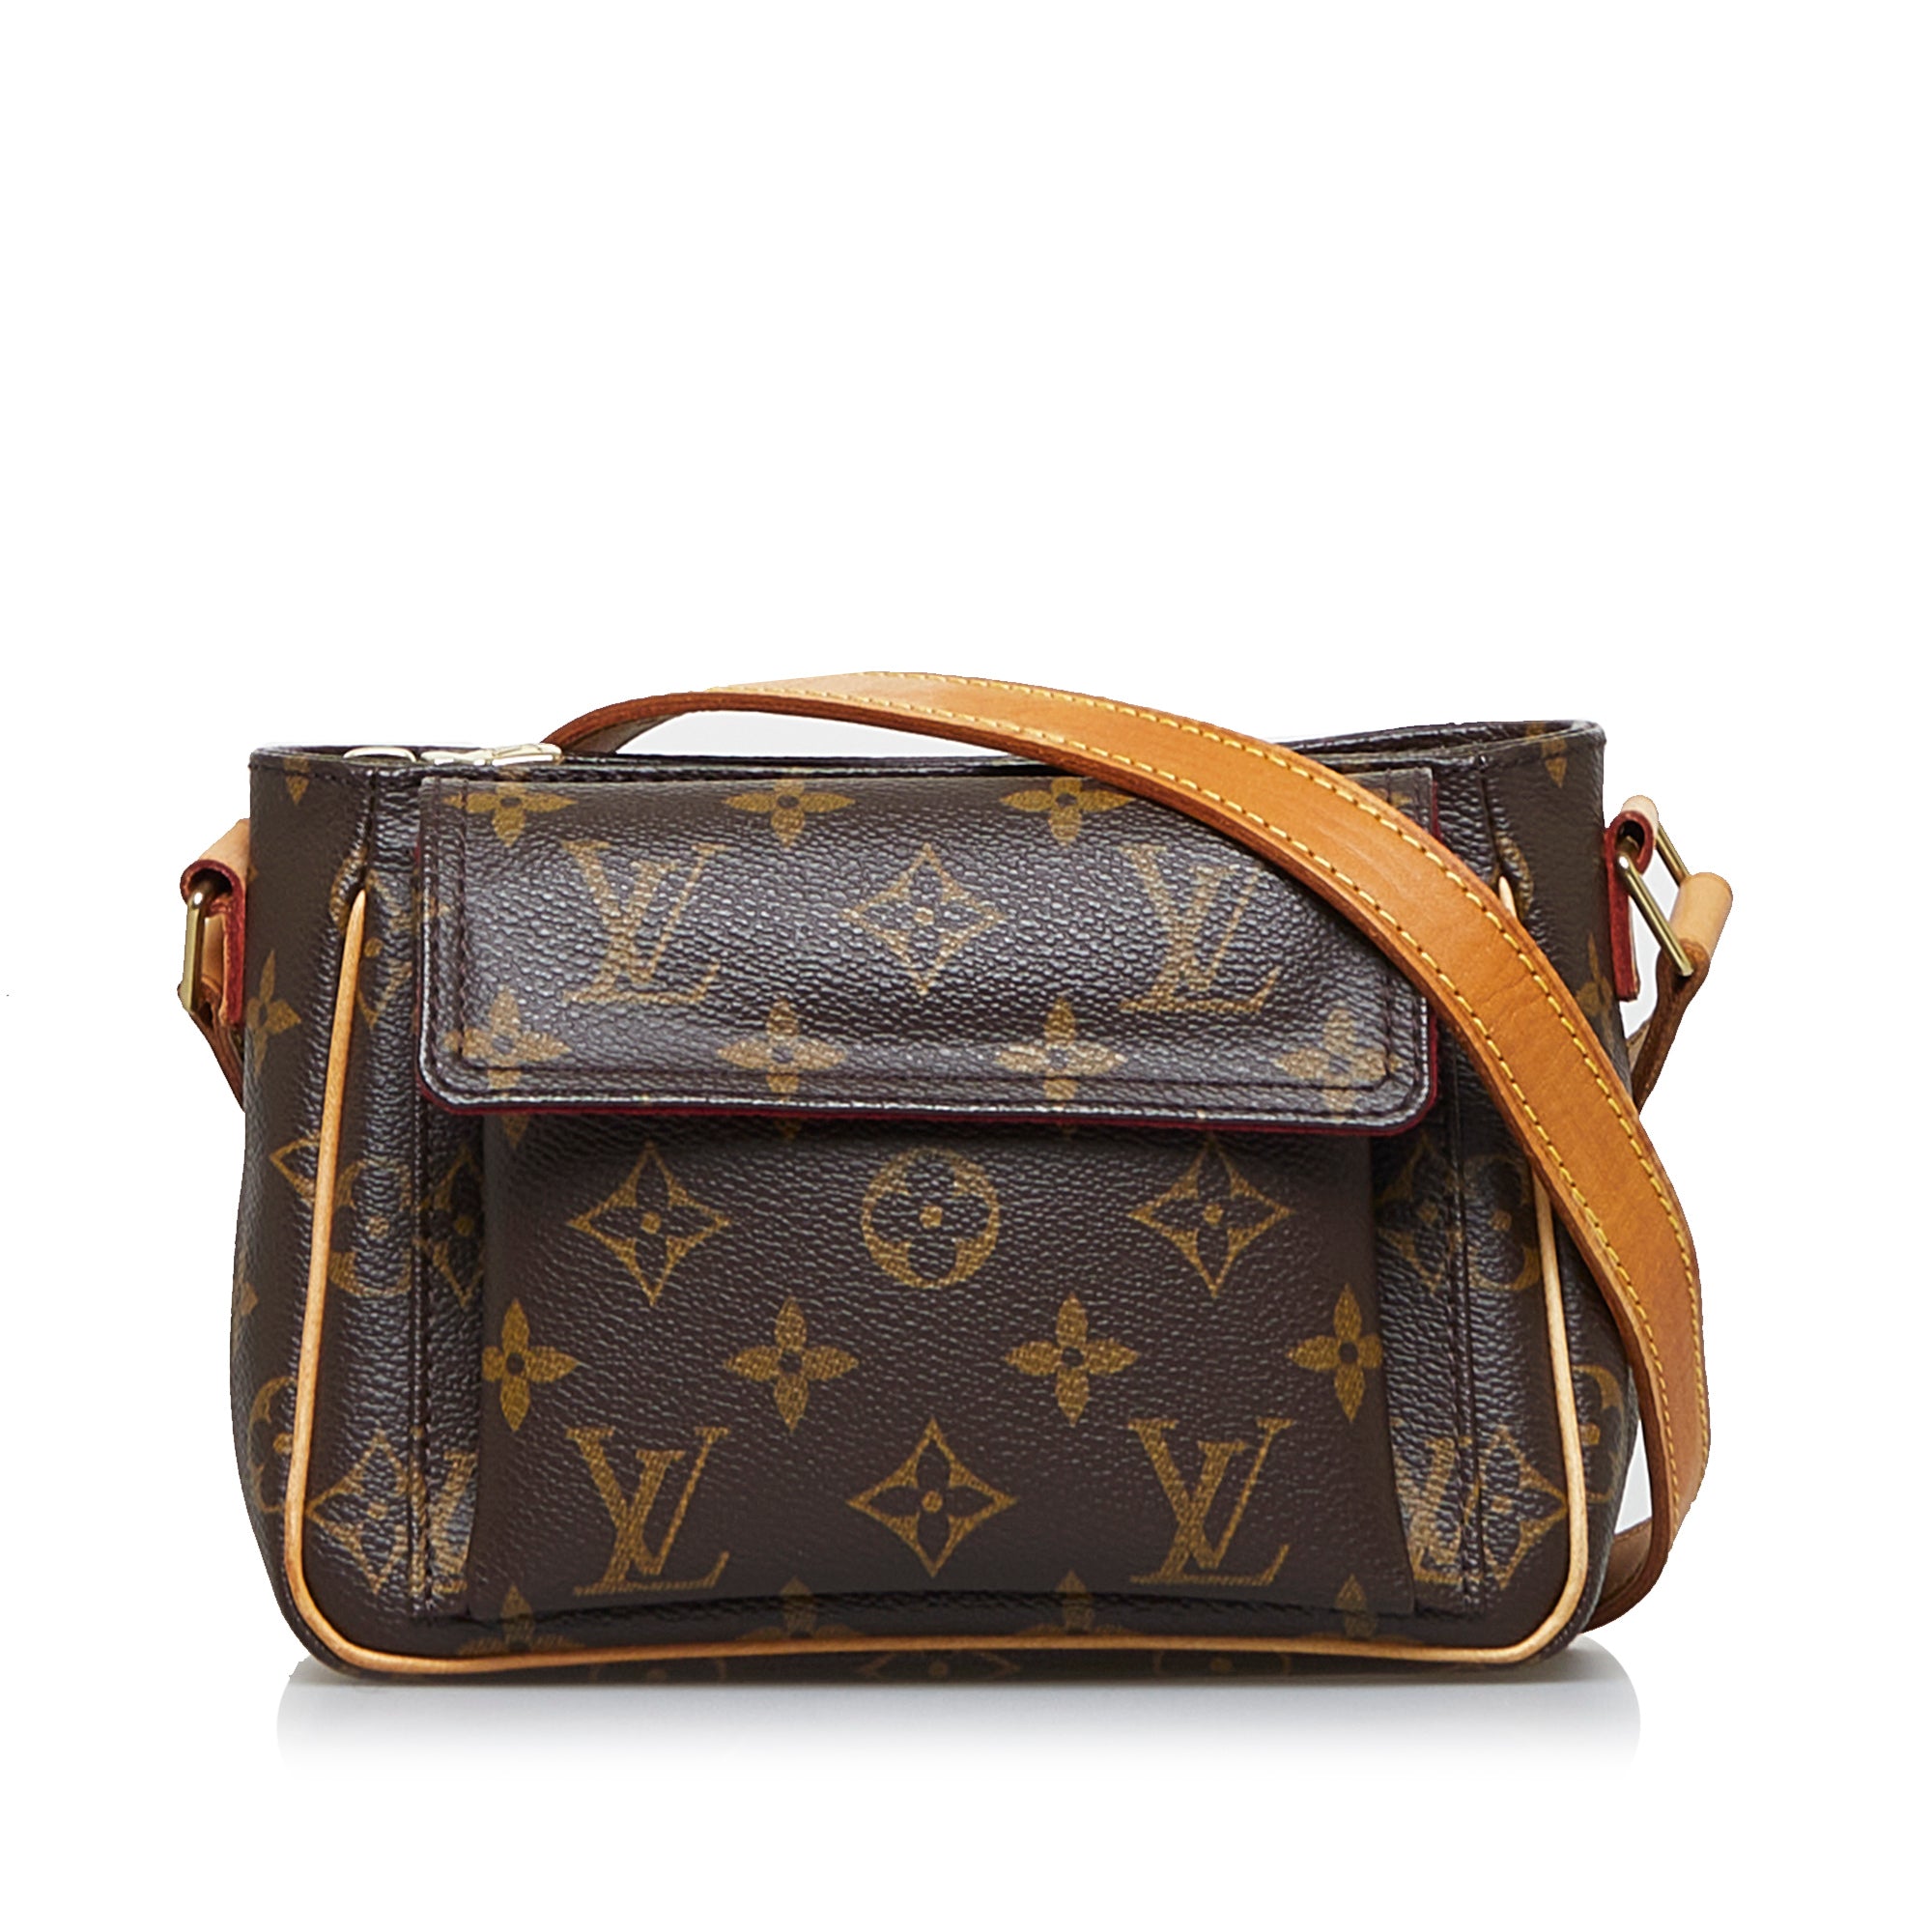 Handbag Review, Louis Vuitton Viva Cite PM